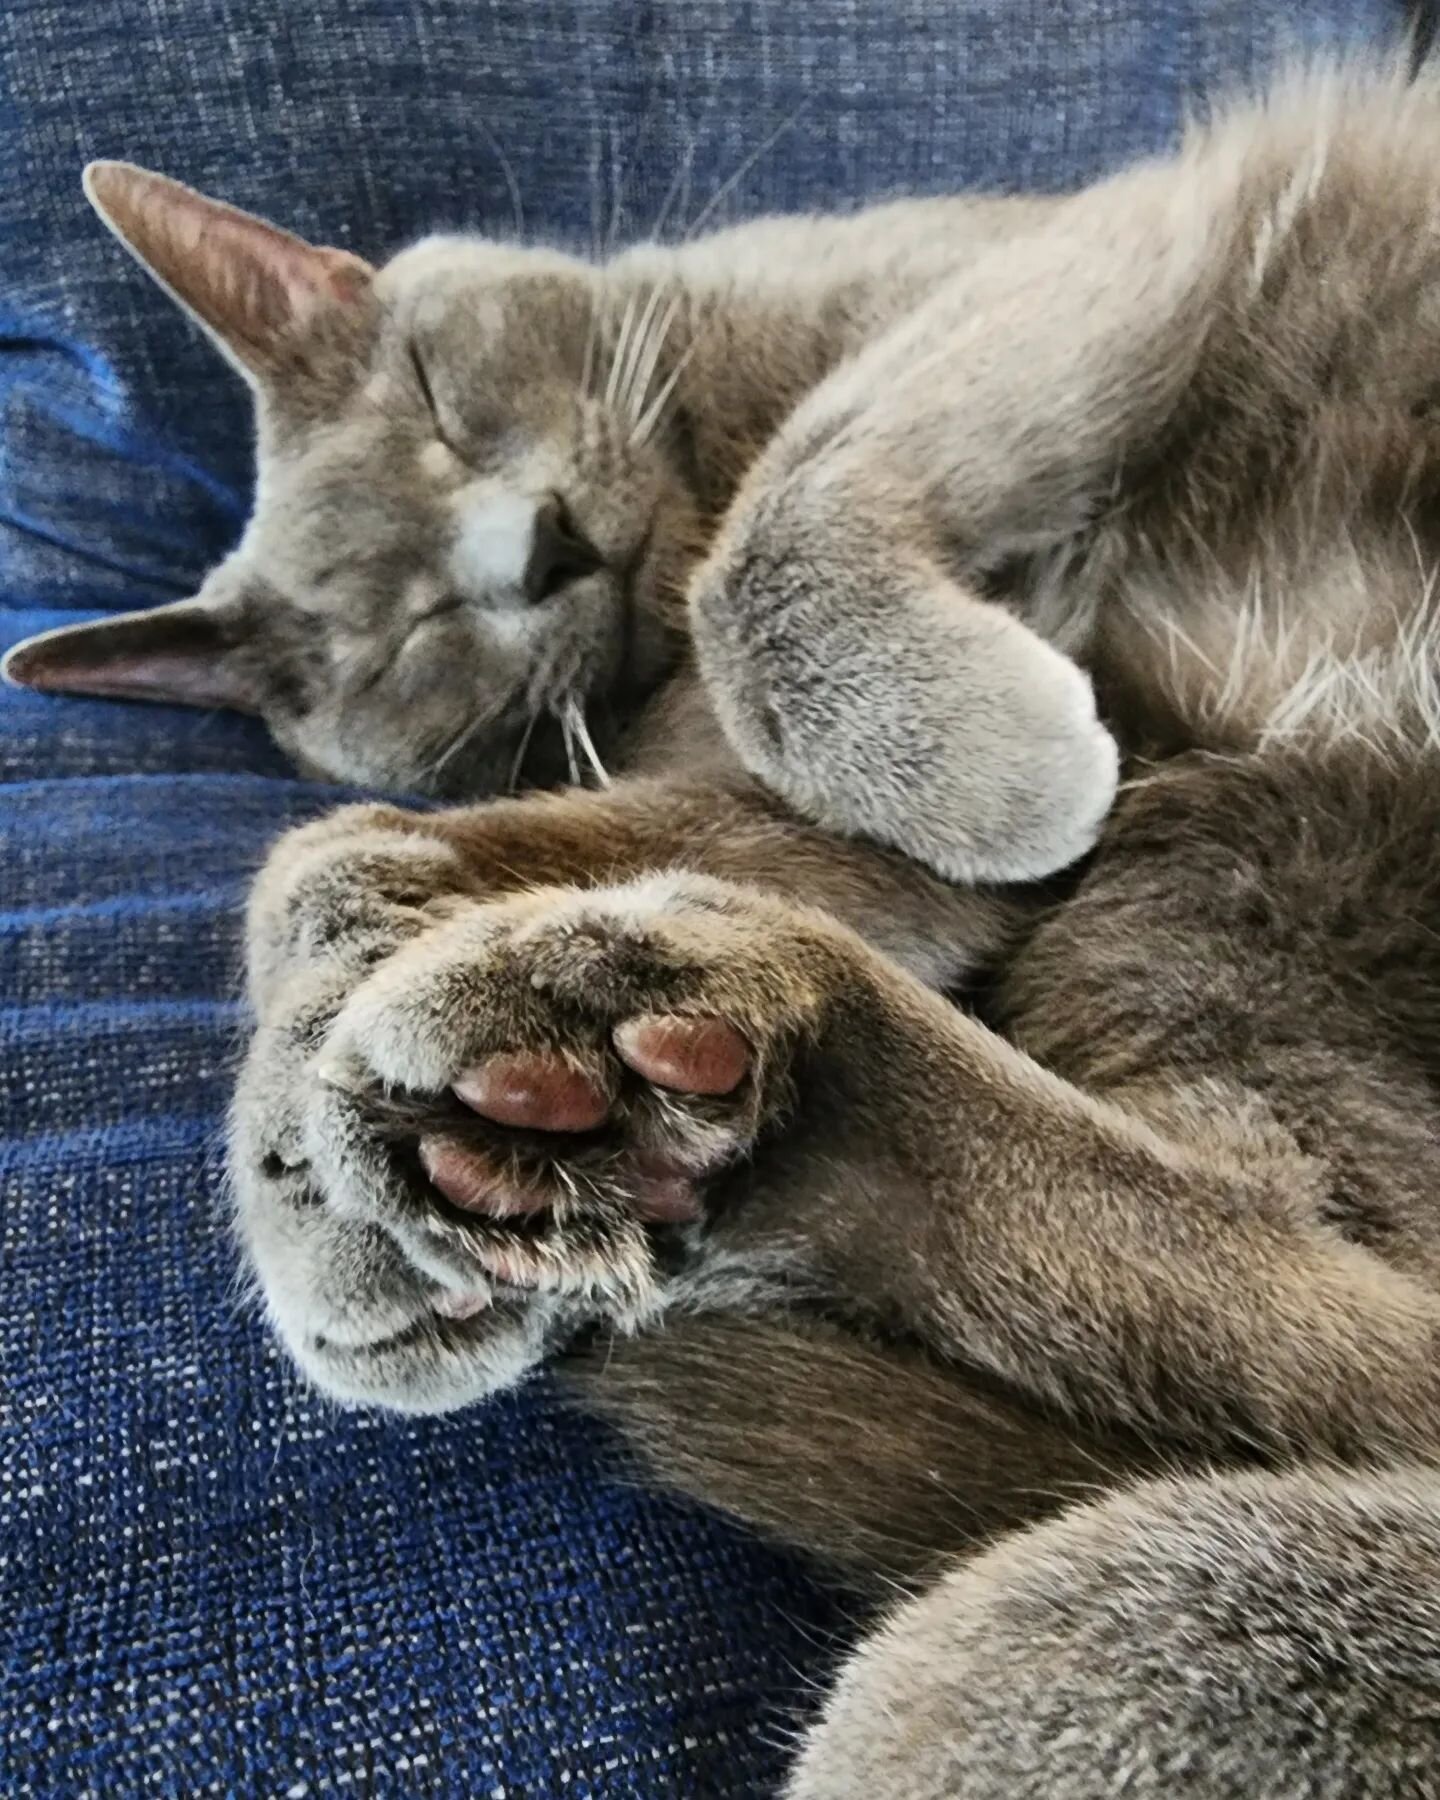 Lazy Sunday and gray toe beans.